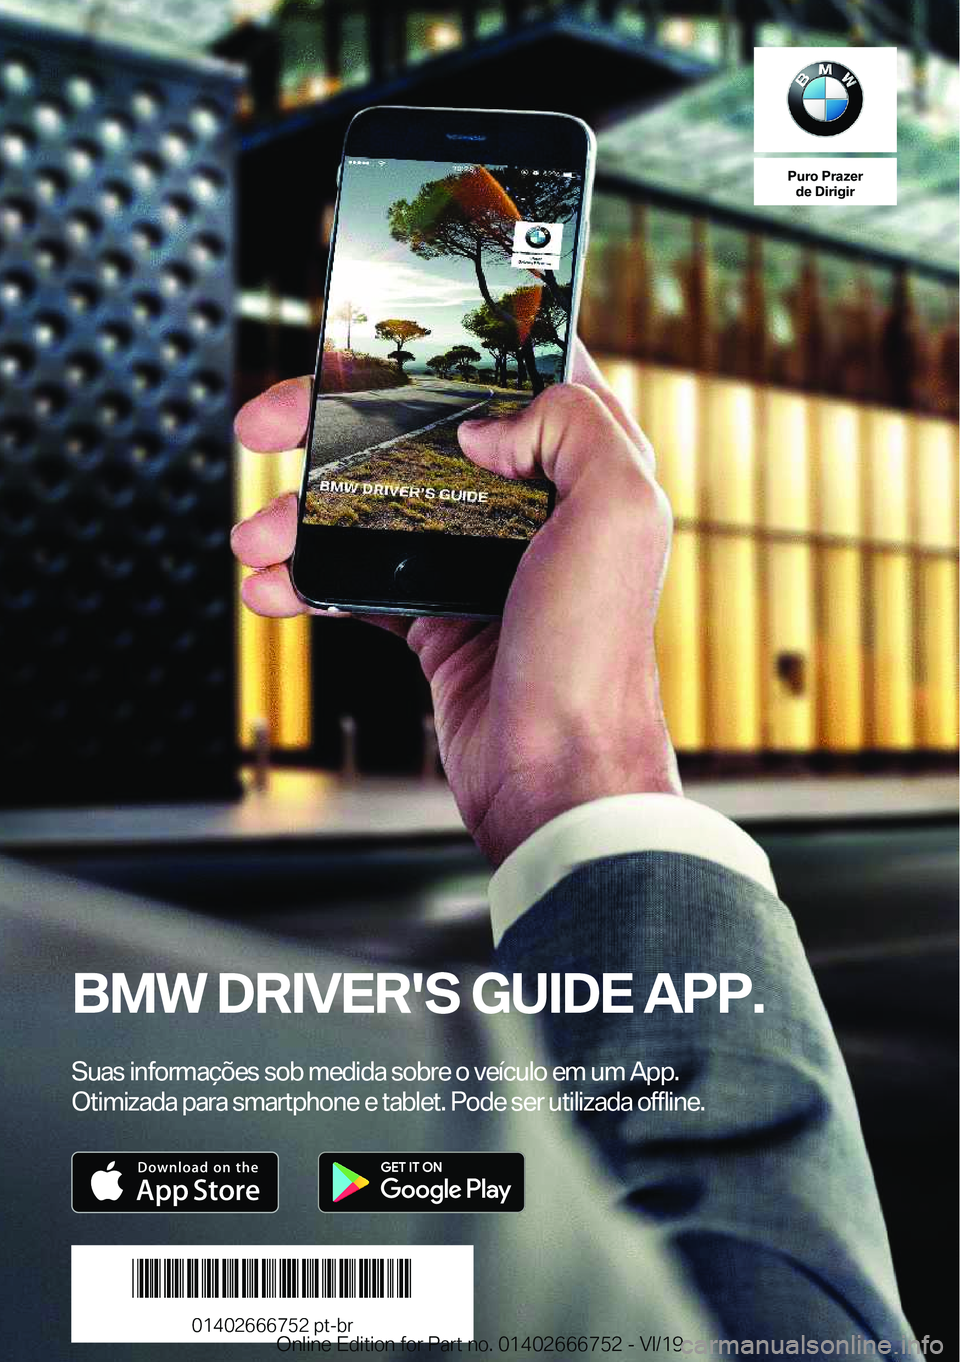 BMW M5 2020  Manual do condutor (in Portuguese) �P�u�r�o��P�r�a�z�e�r�d�e��D�i�r�i�g�i�r
�B�M�W��D�R�I�V�E�R�'�S��G�U�I�D�E��A�P�P�.
�S�u�a�s��i�n�f�o�r�m�a�